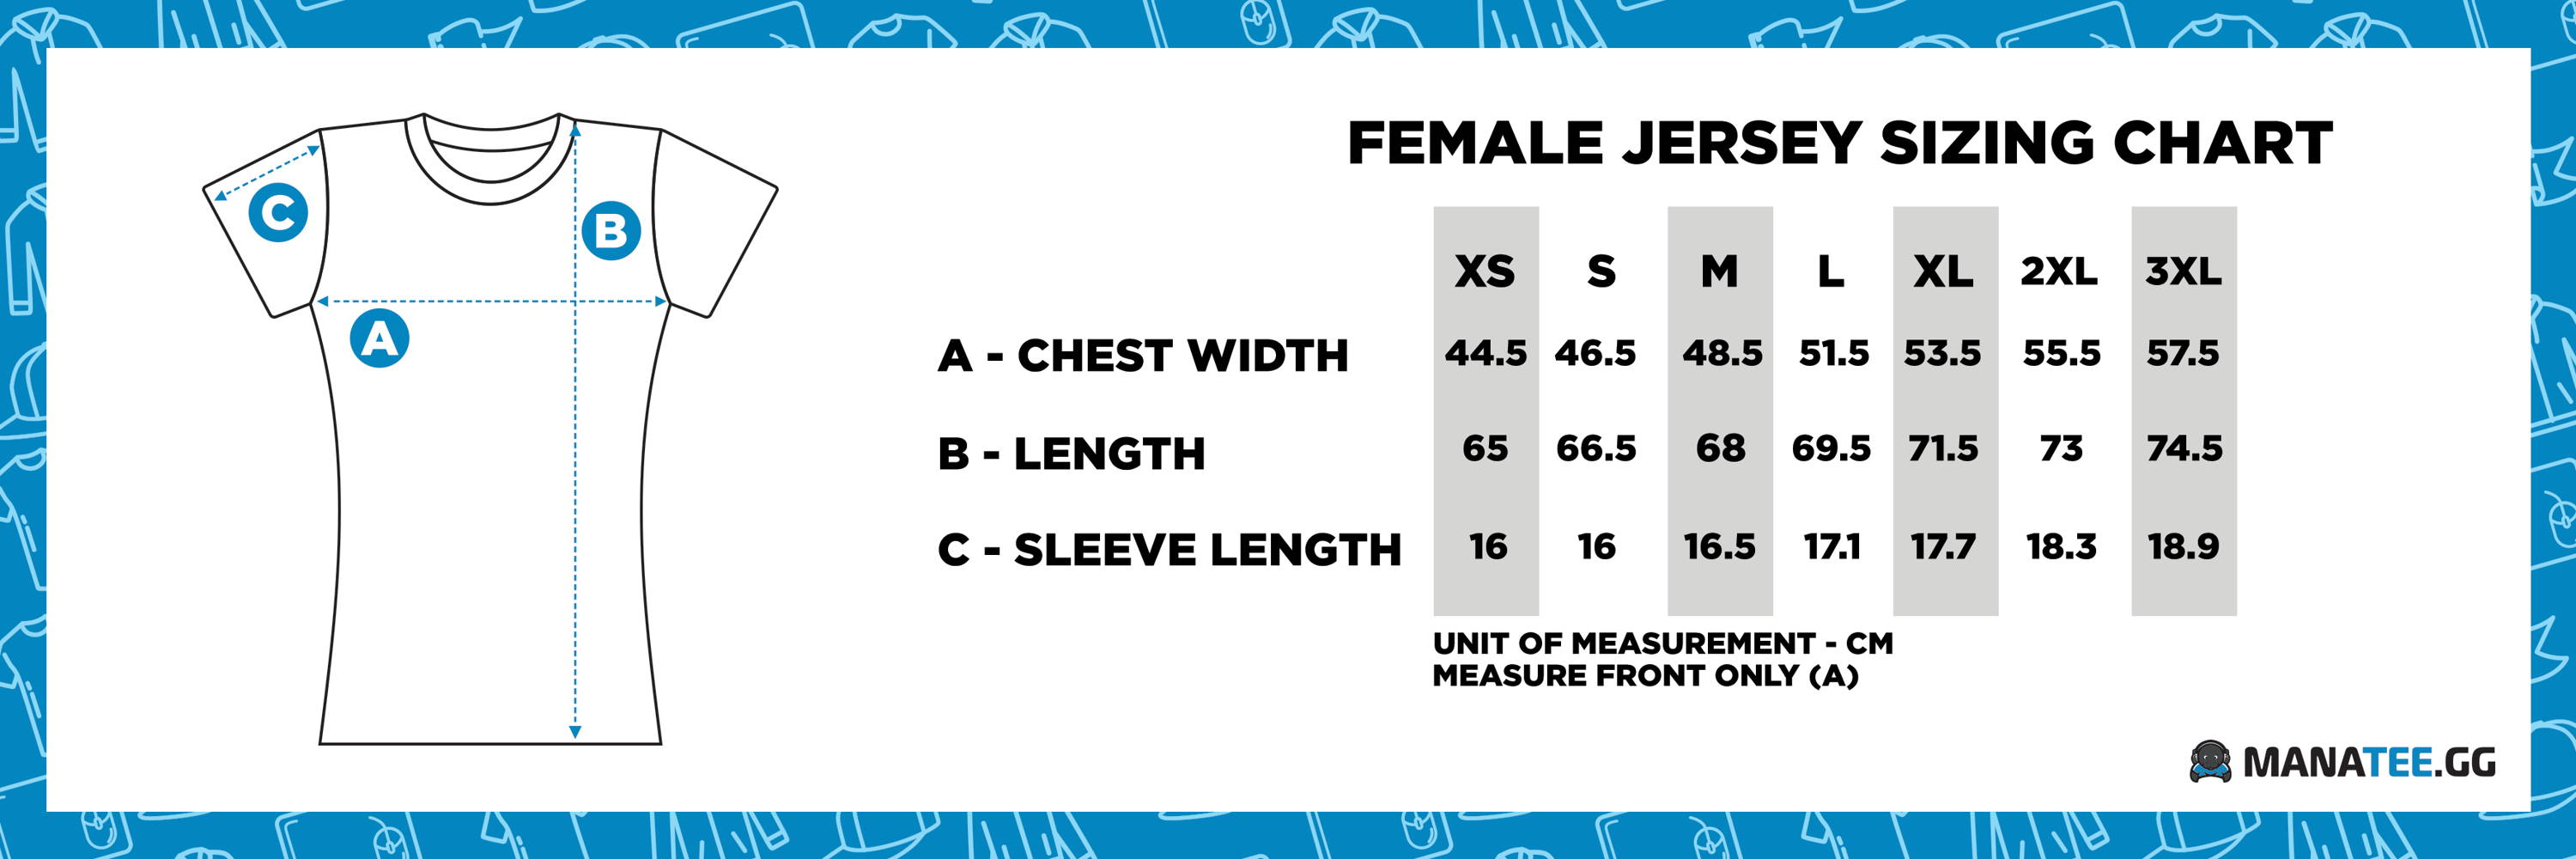 Manatee.GG Esports Jersey Gaming Size Chart - Female